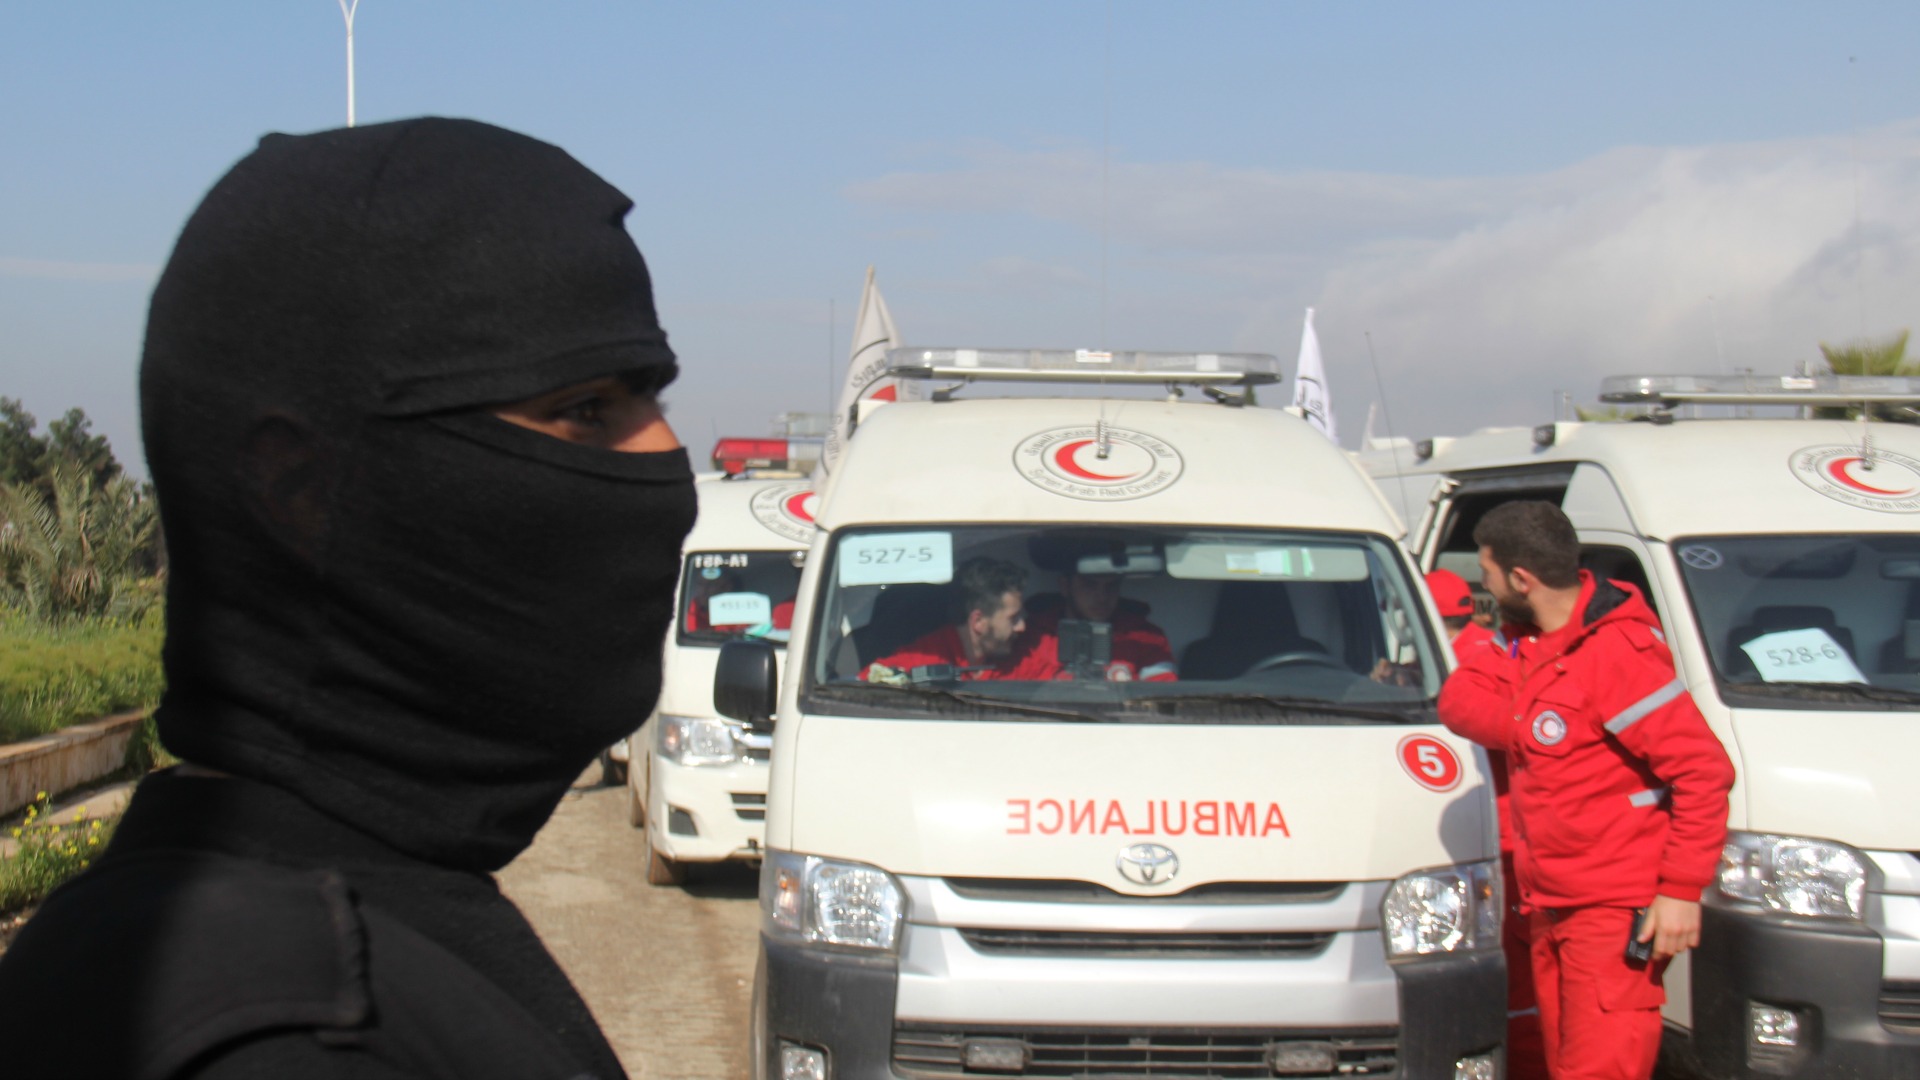 Comienza la evacuación de cuatro ciudades asediadas en Siria